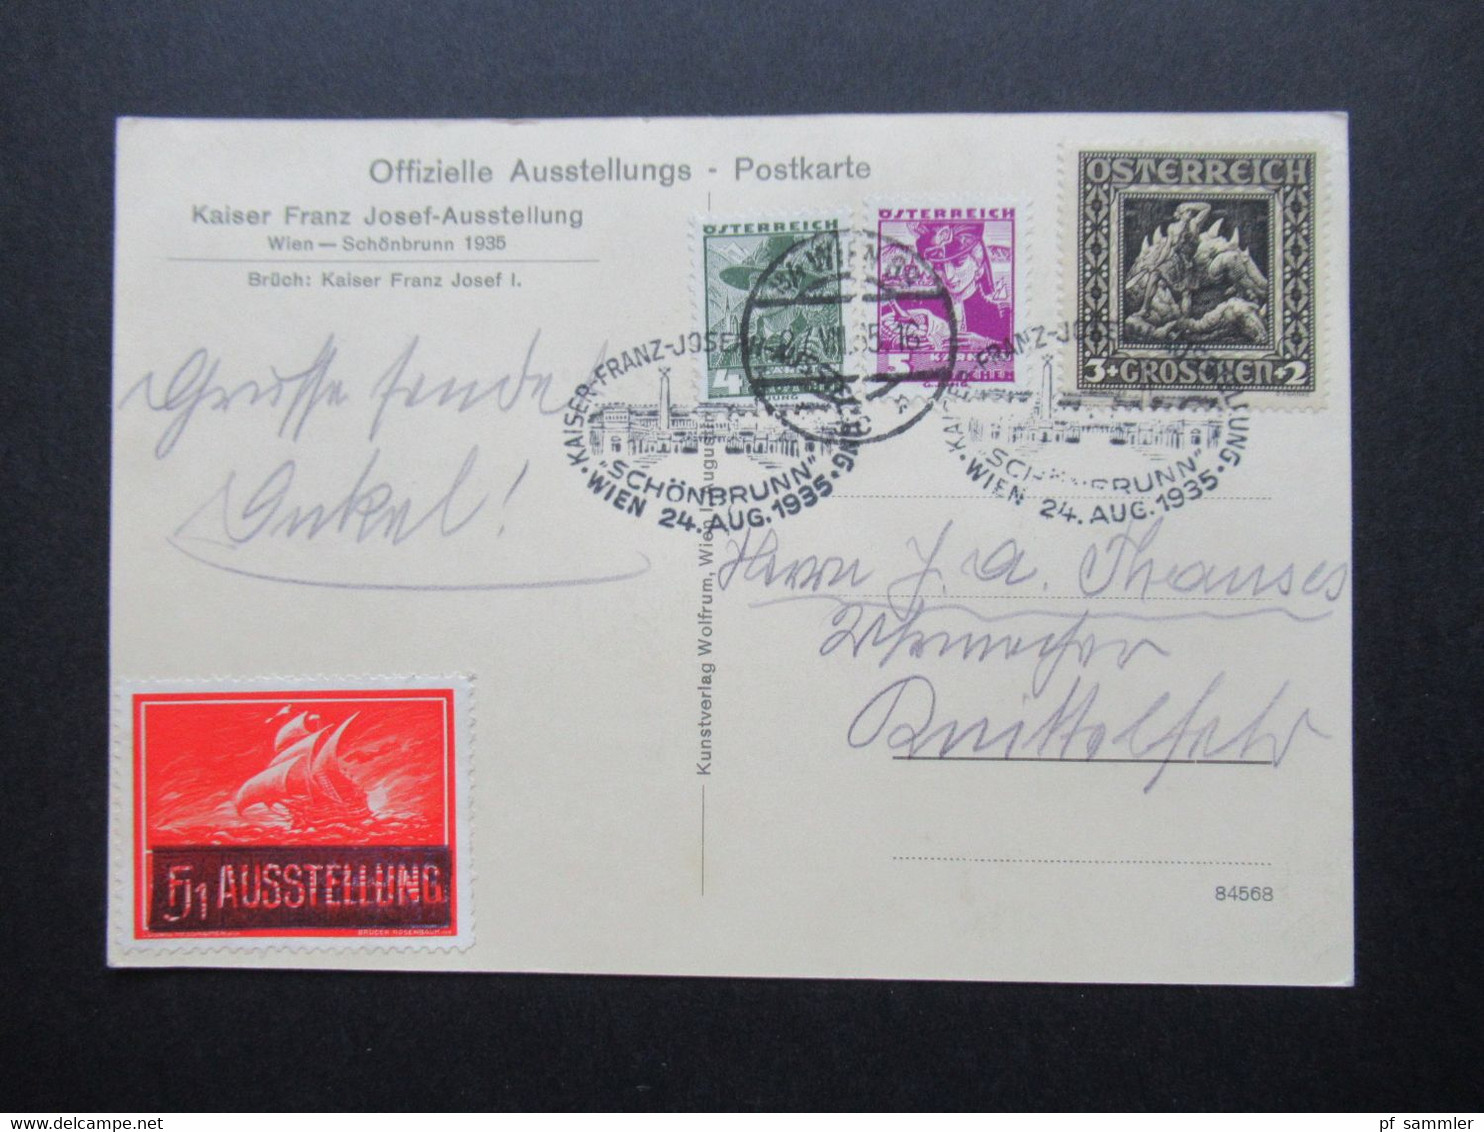 1935 Offizielle PK Kaiser Franz Josef Ausstellung Mit Vignette Und Sonderstempel MiF Mit Nibelungensage Nr. 488 - Covers & Documents